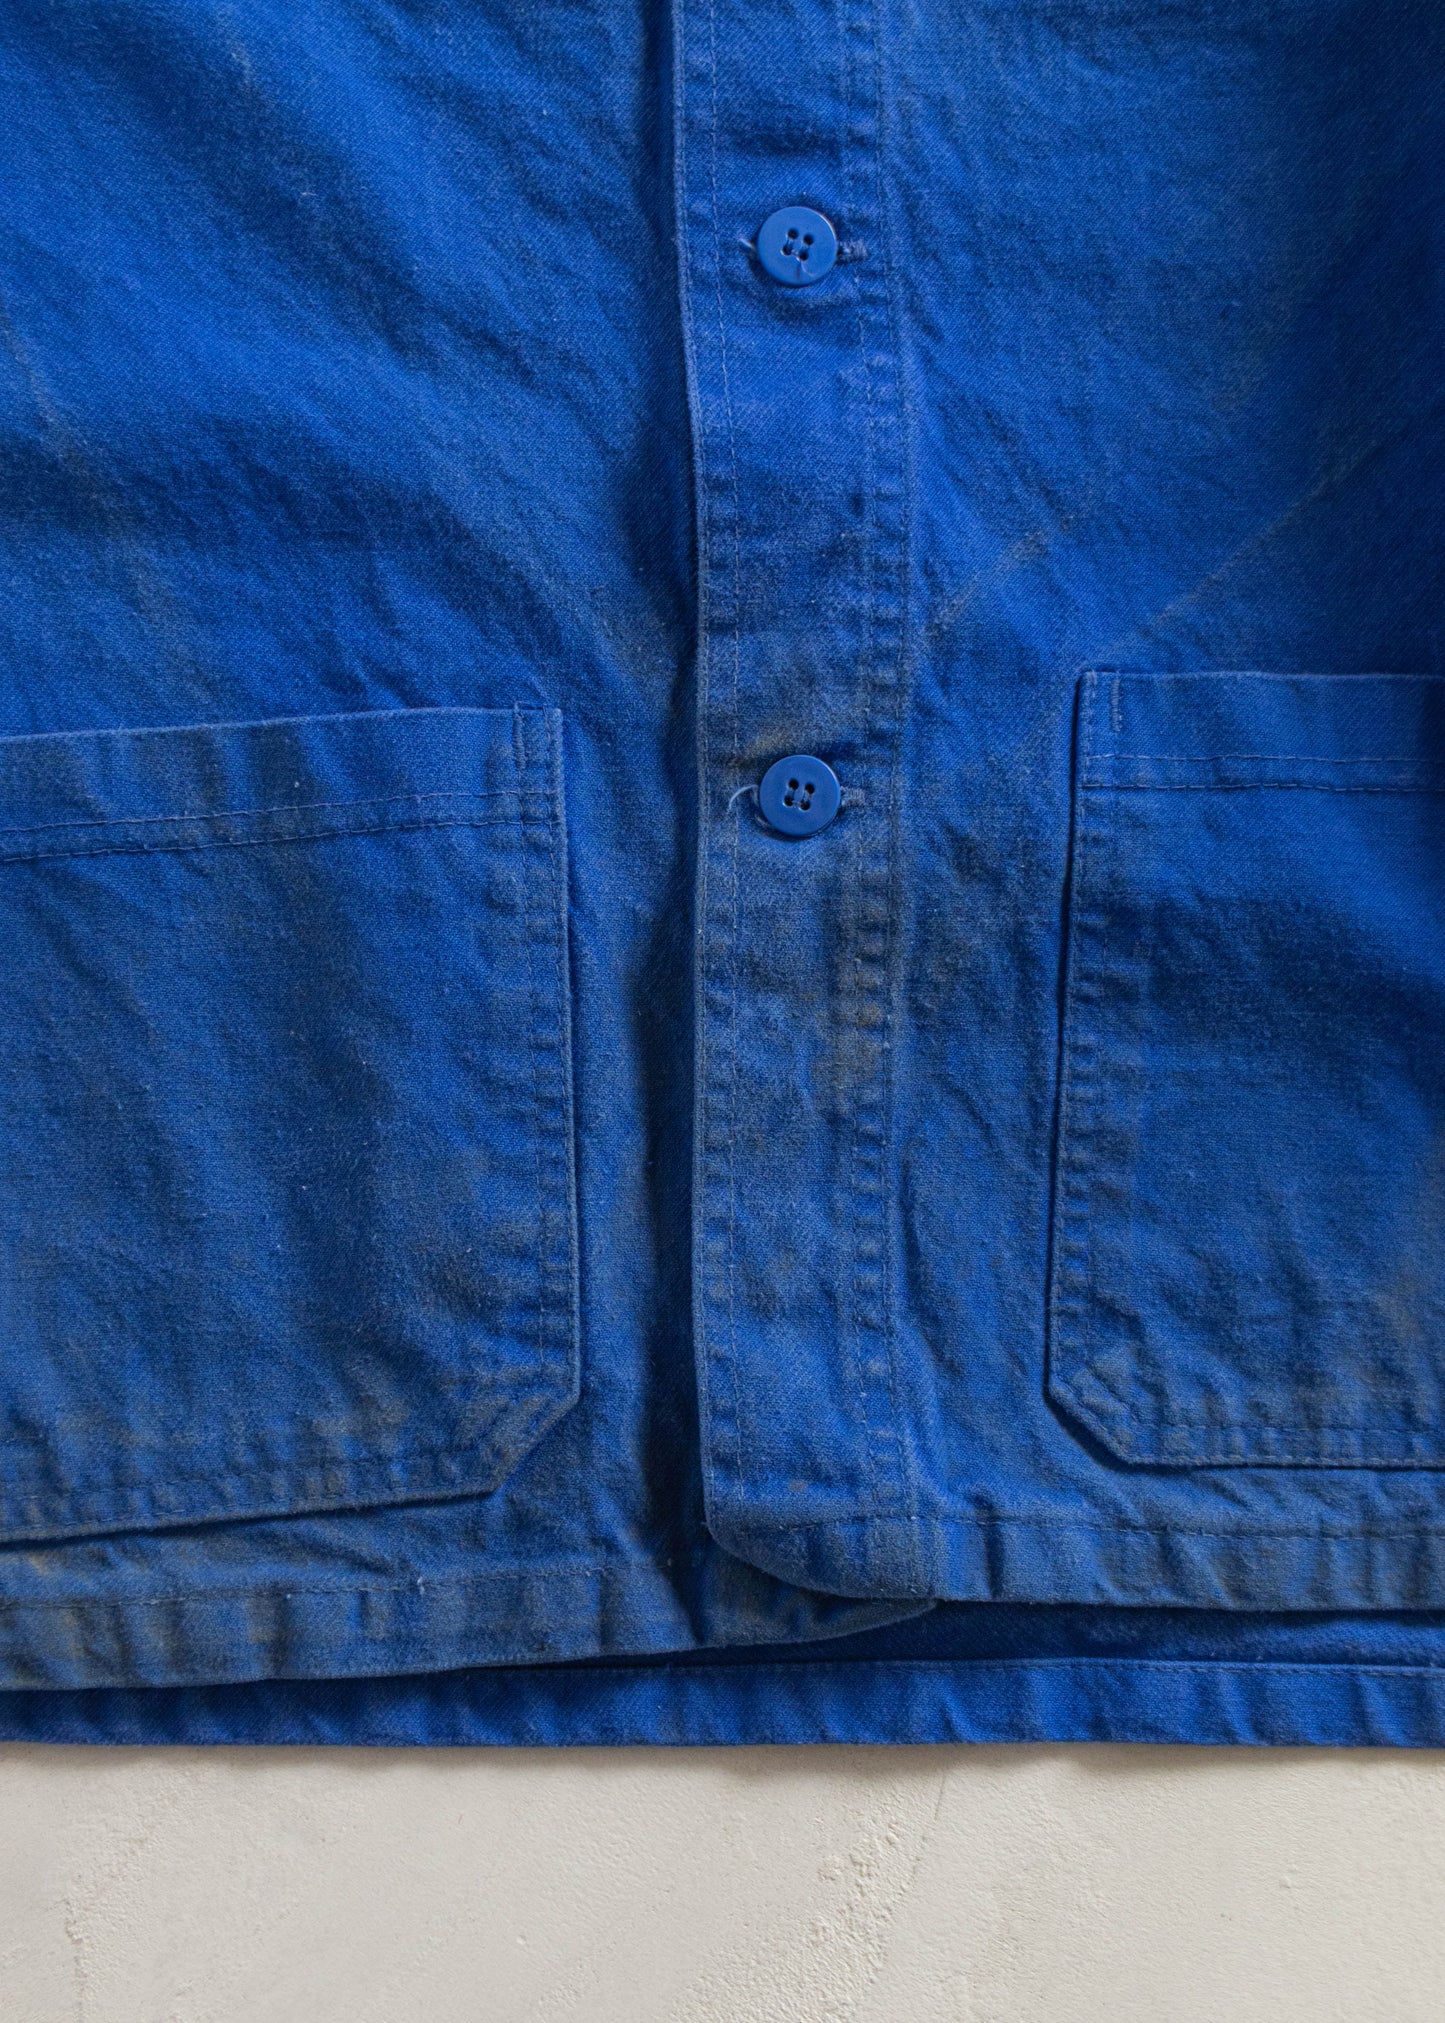 Vintage 1980s Bleu de Travail Workwear Chore Jacket Size XL/2XL